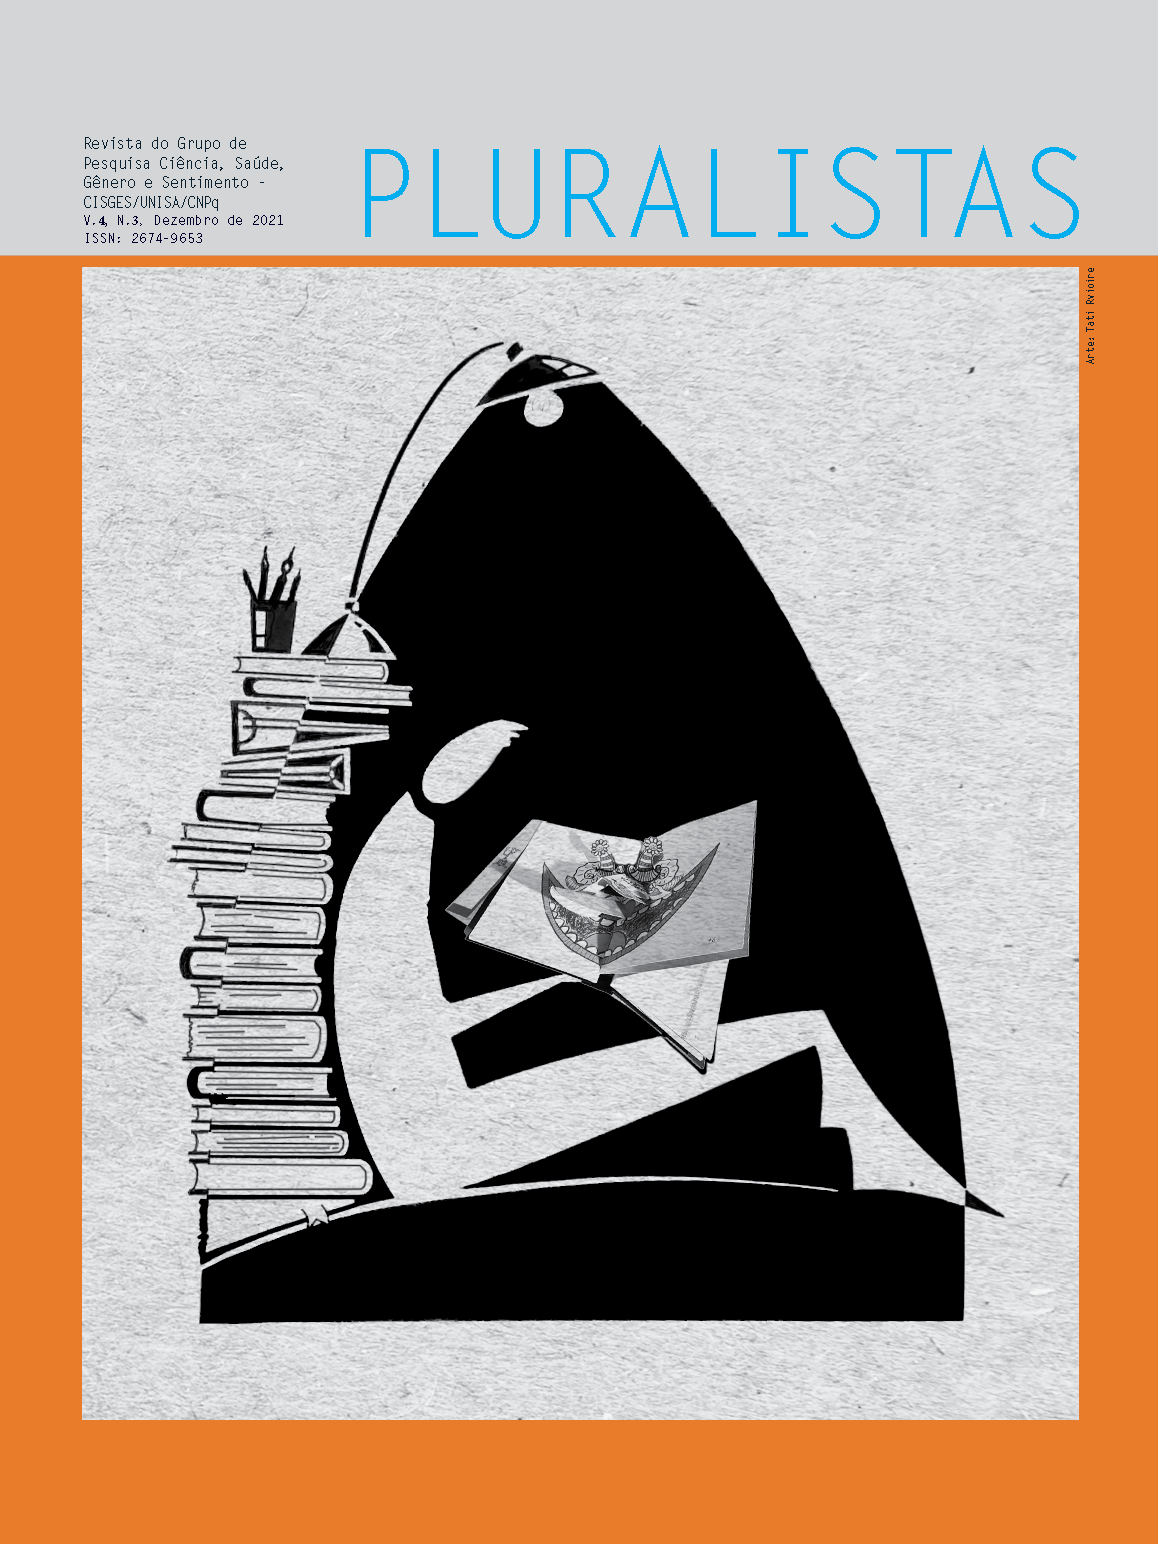 					Visualizar v. 4 n. 3 (2021): Revista Pluralistas - Revista do Grupo de Pesquisa Ciência, Saúde, Gênero e Sentimento - CISGES/UNISA/CNpq
				